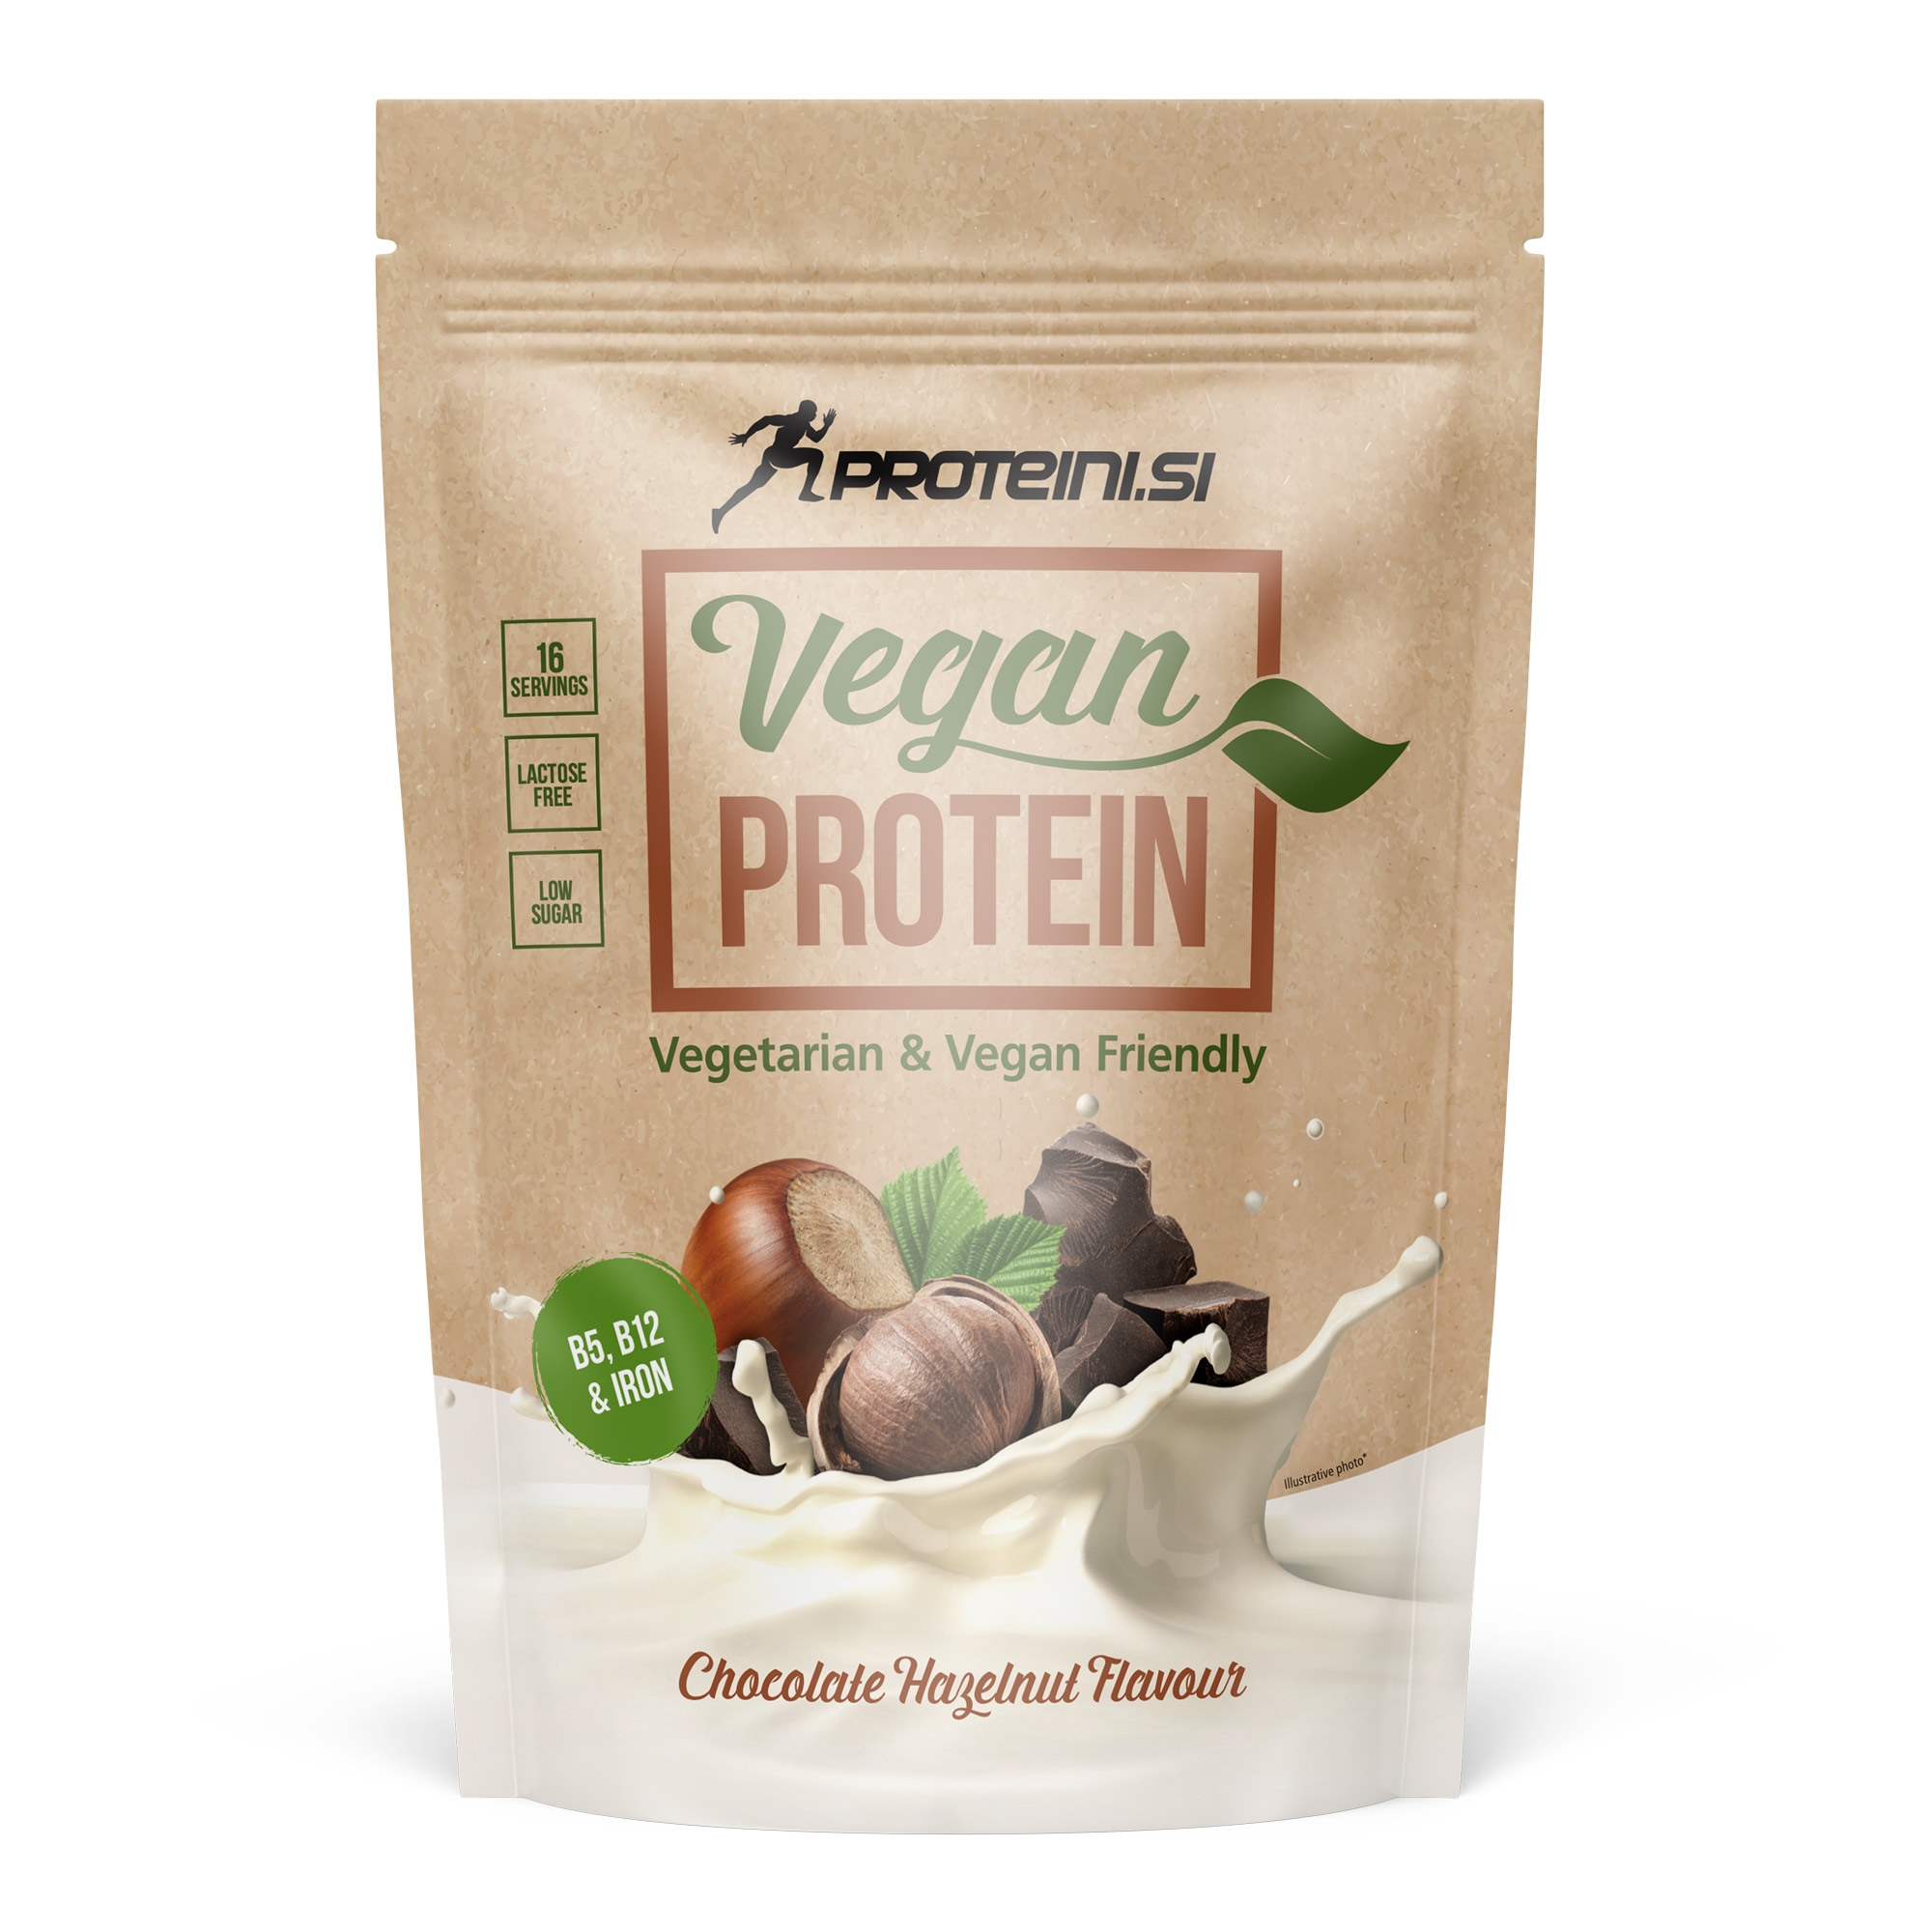 Proteini Vegan Protein 500g